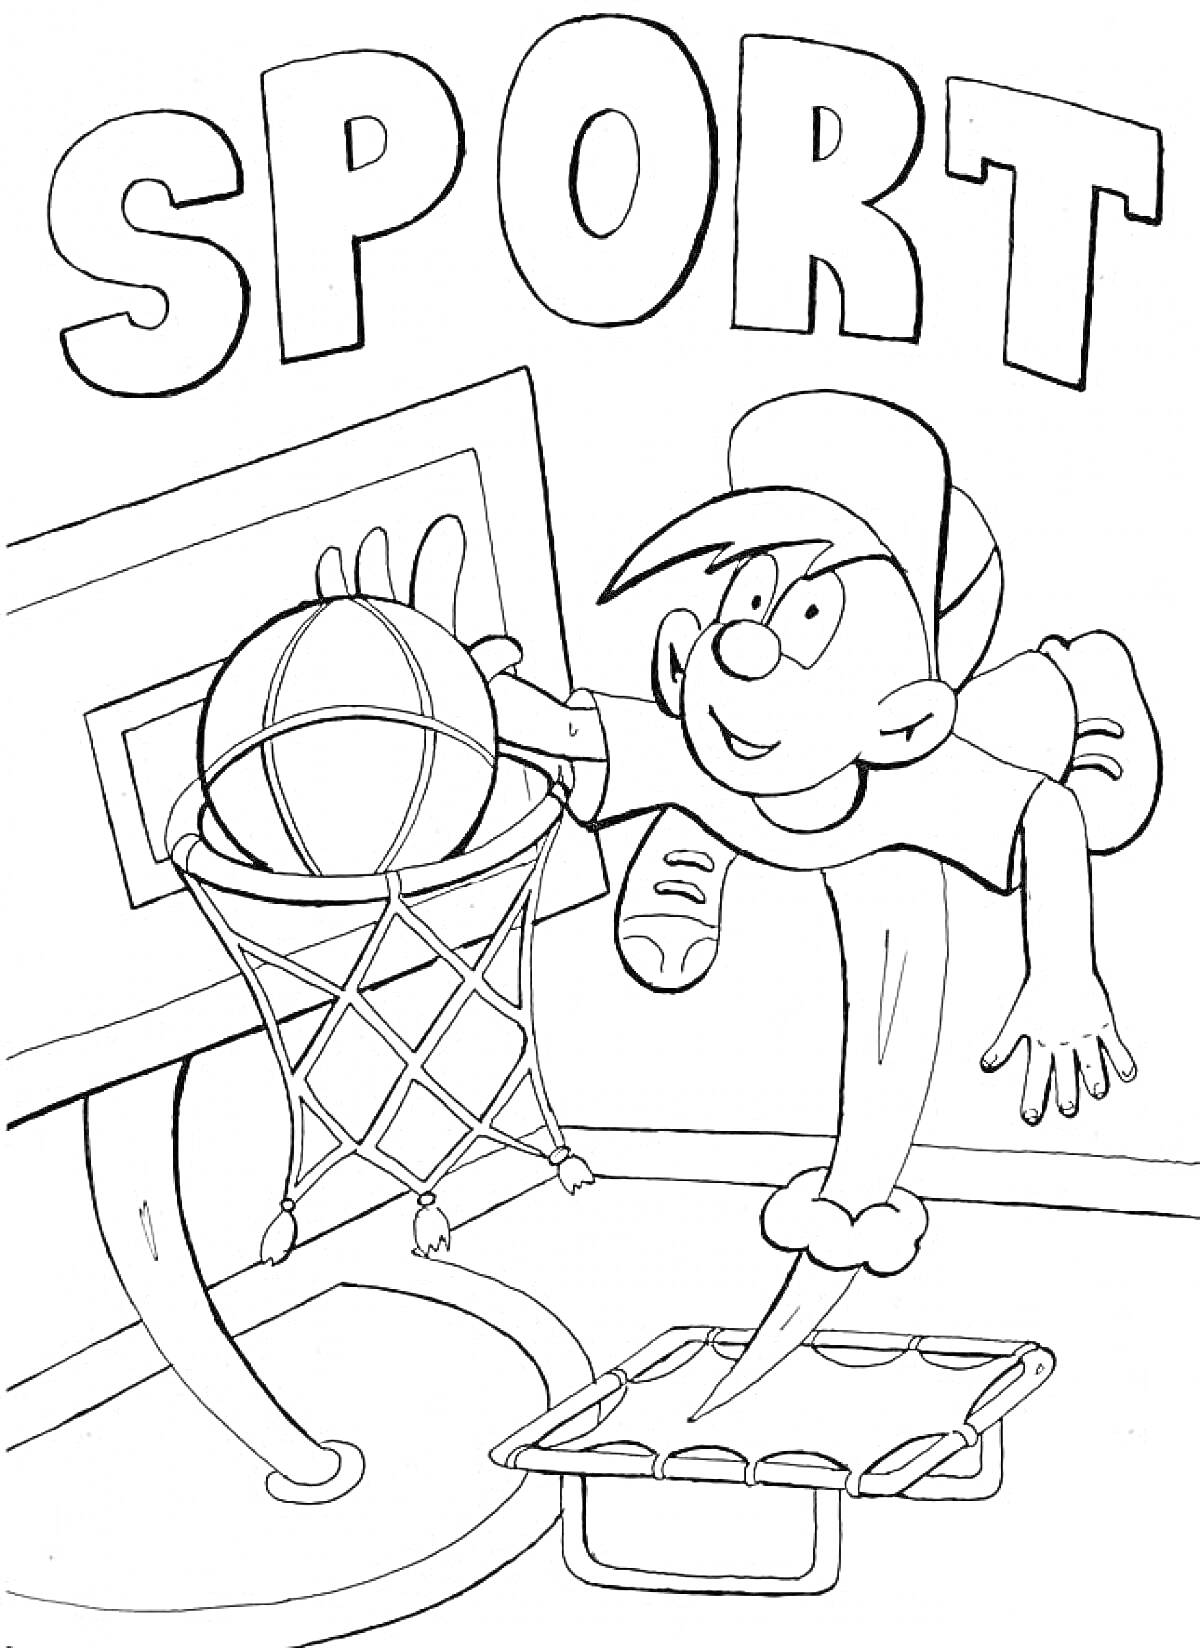 Мальчик в бейсболке играет в баскетбол, забрасывая мяч в корзину с баскетбольным кольцом на фоне надписи 